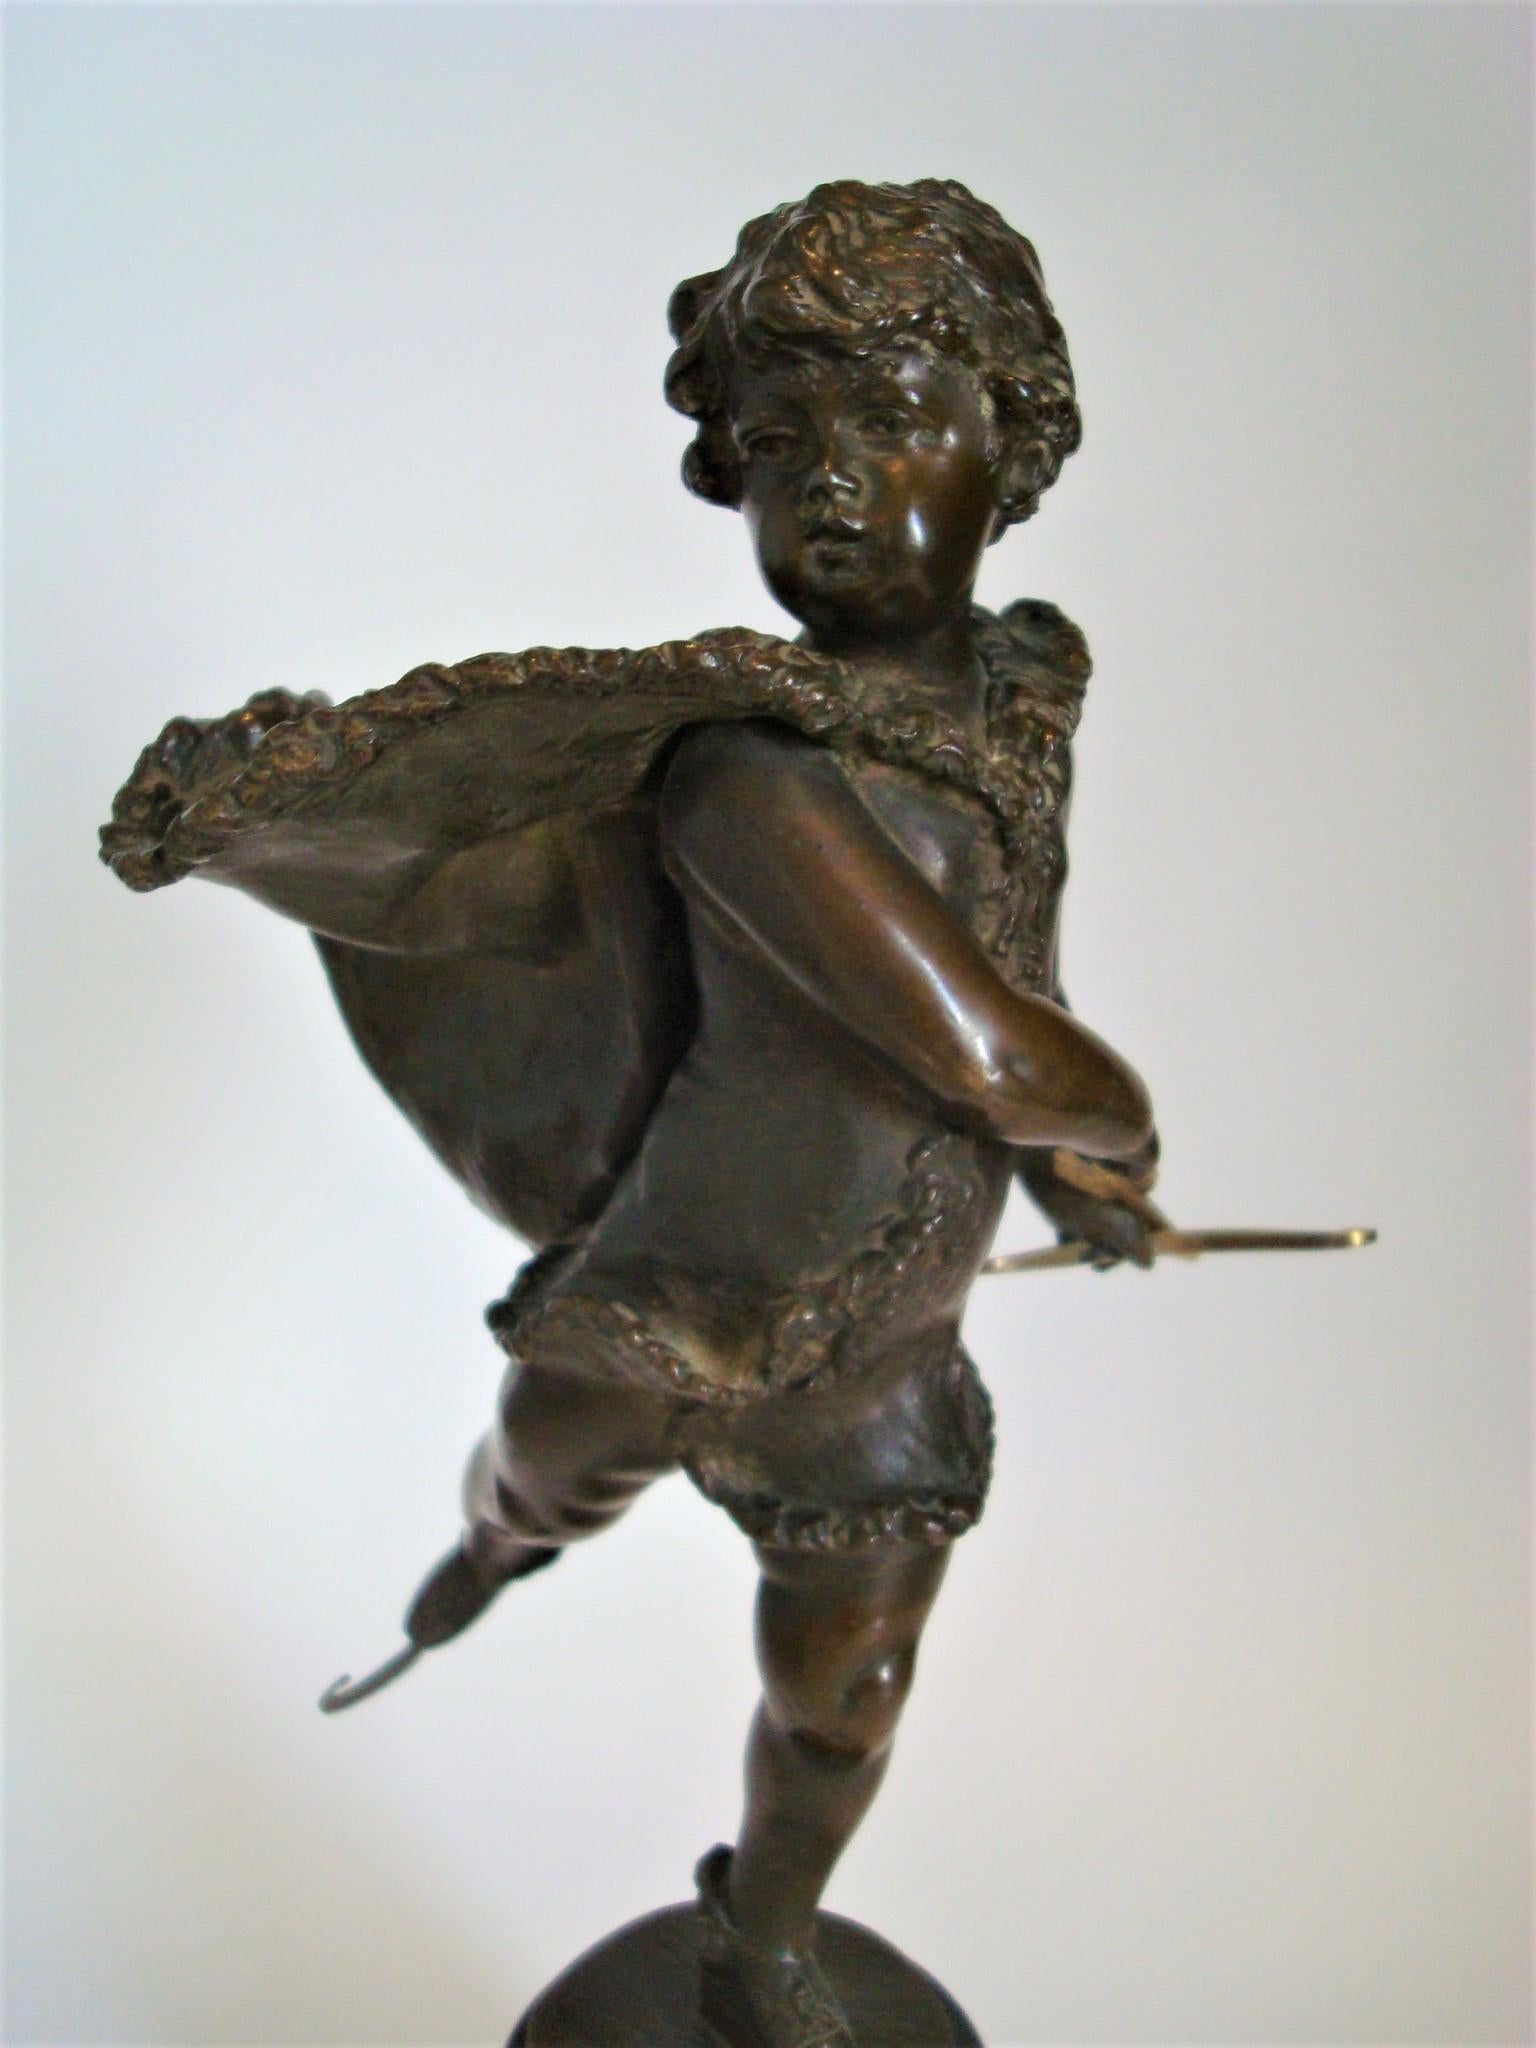 Bronze représentant un jeune garçon (Cupidon) faisant du patin à glace, par Franz Iffland (Berlin 1862-1935). Un garçon, vêtu d'une cape bordée de fourrure, tient une flèche à plumes en forme de cupidon avec un arc. Iffland était membre de la